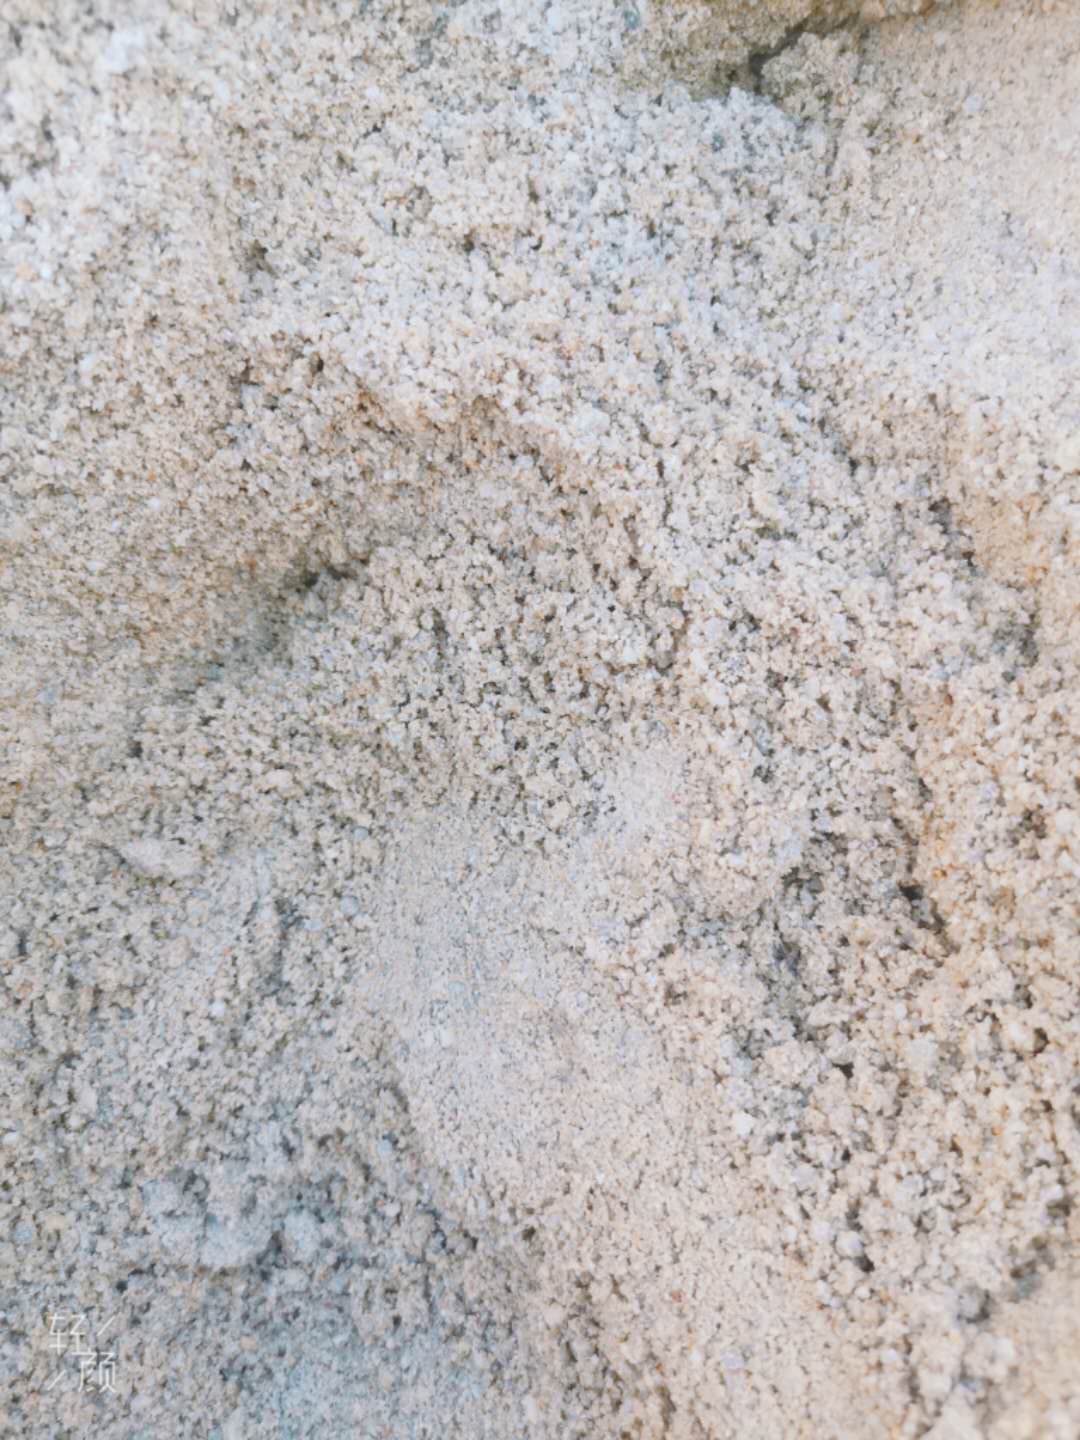 南宁水洗砂 机制砂 细砂 中粗砂 出售 供应 多少钱一方15977131818